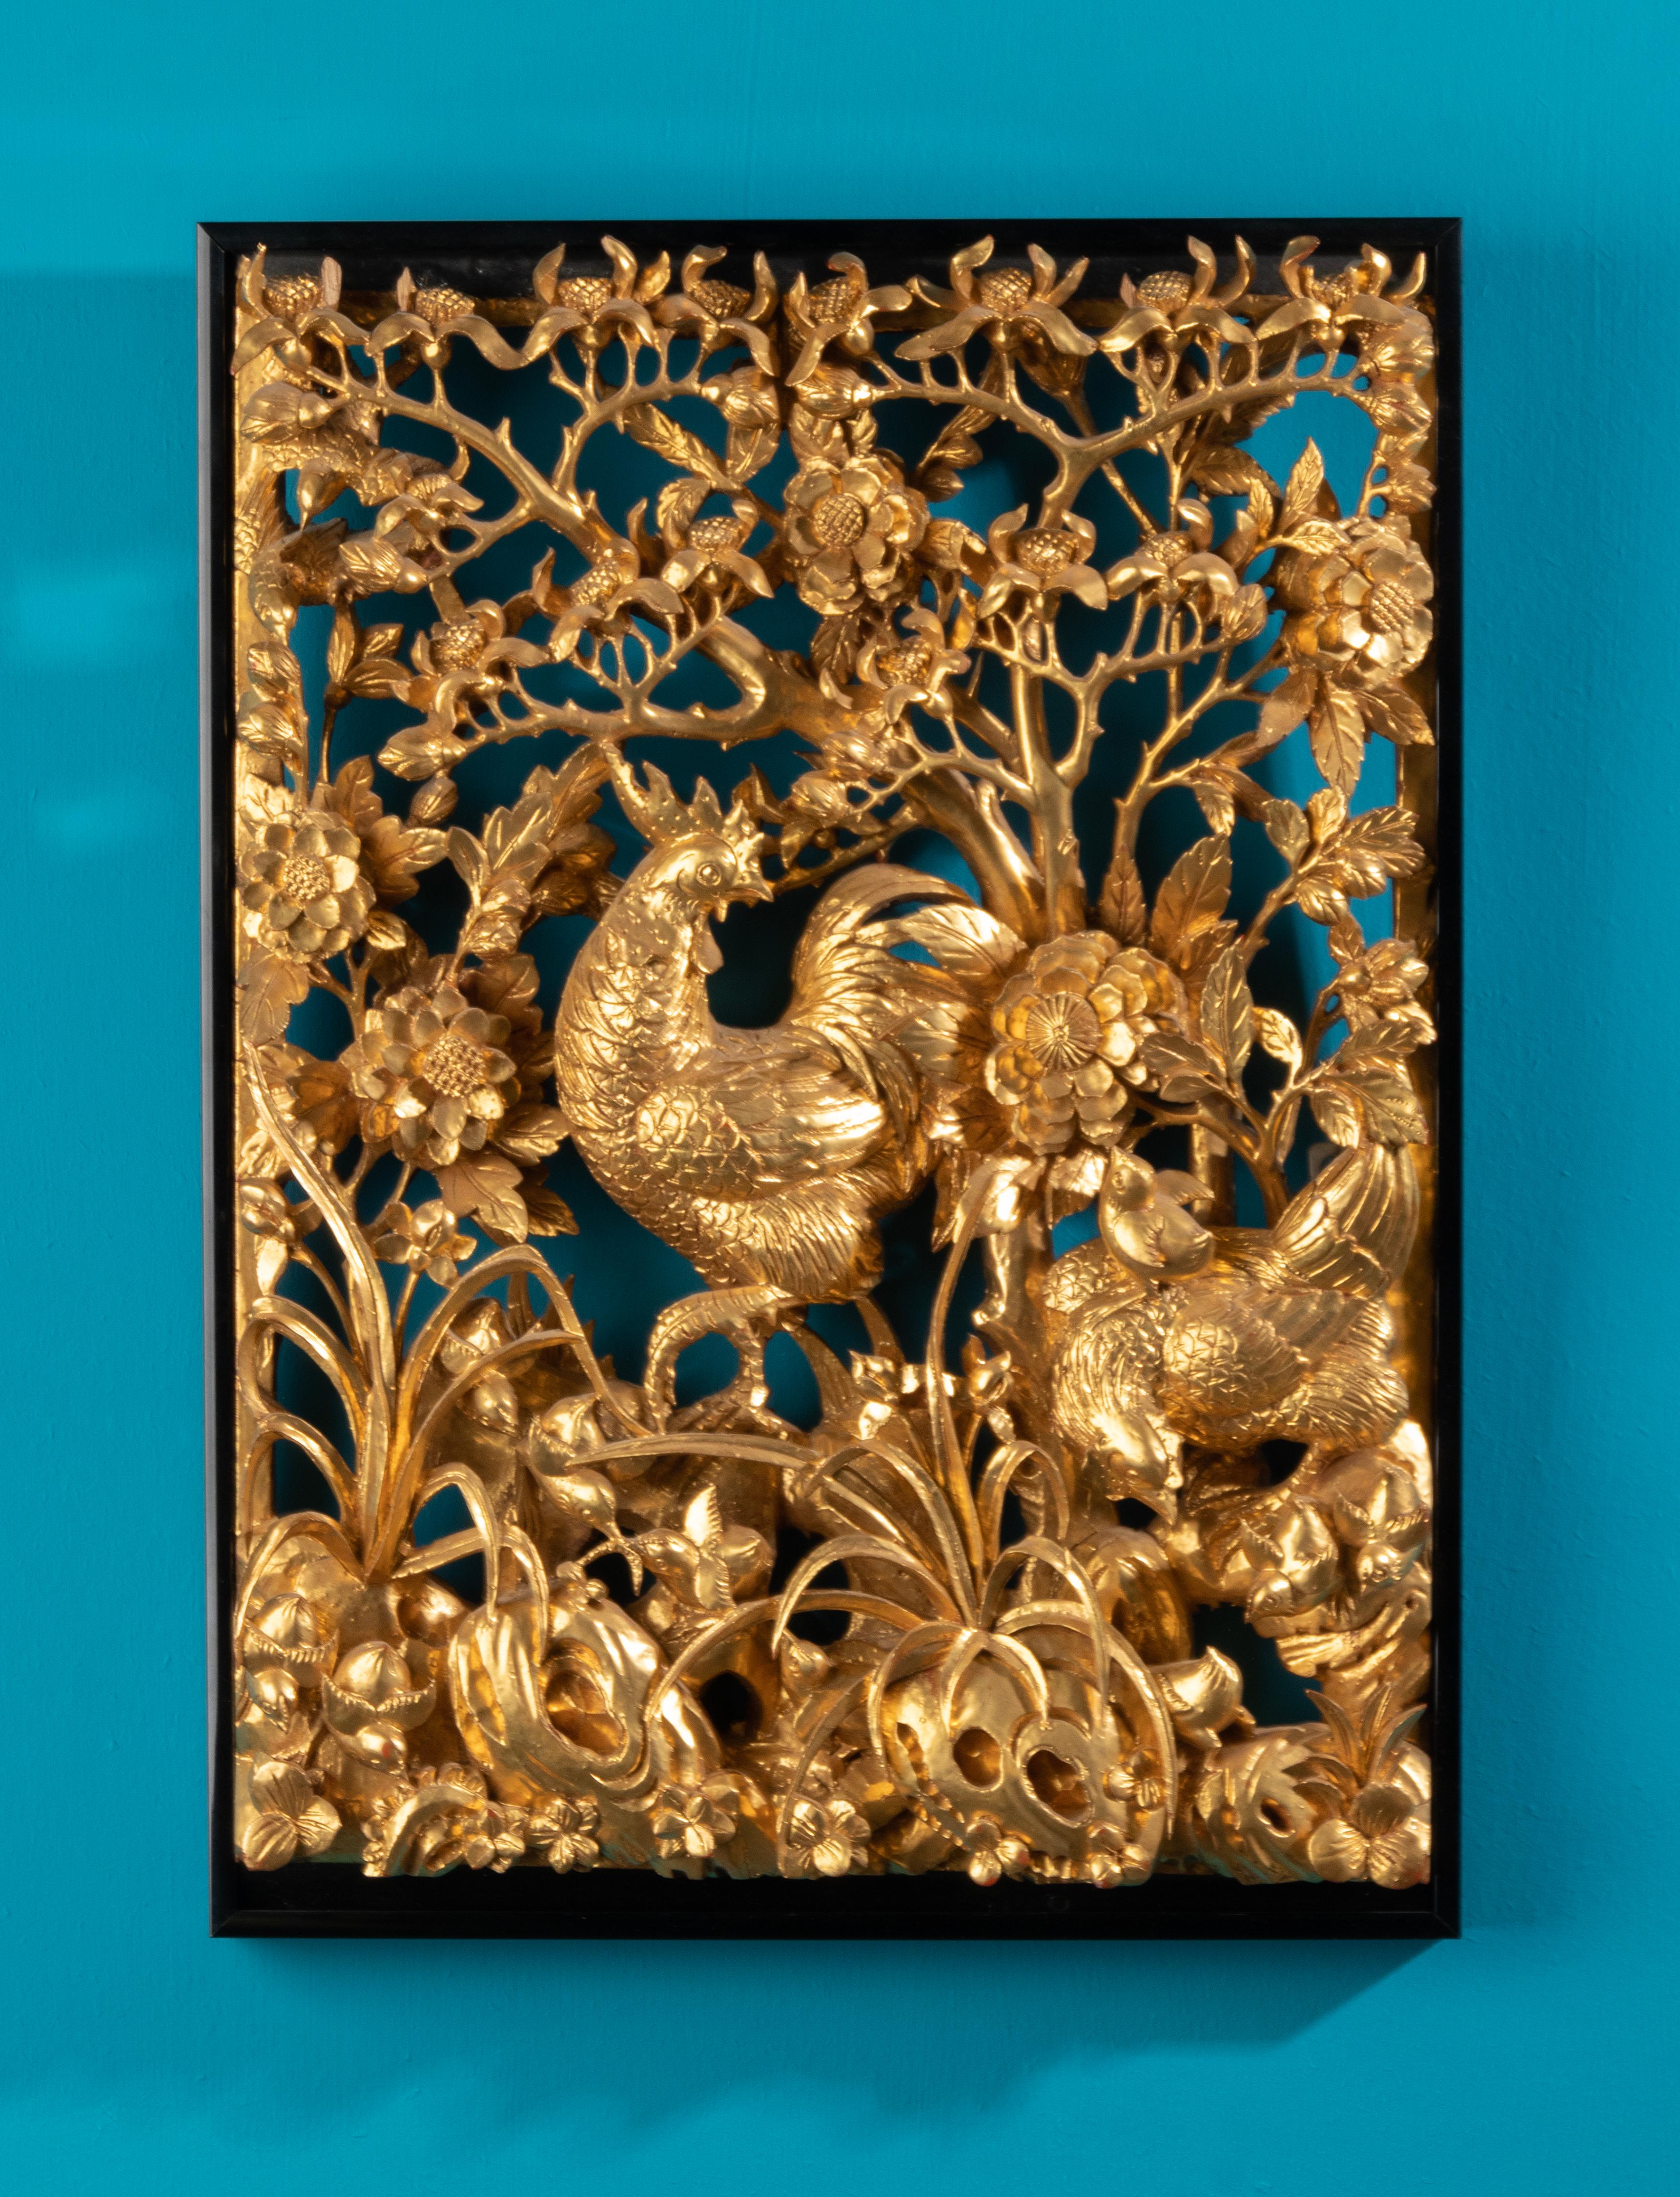 Bas-relief très détaillé de style chinois représentant un coq, des poulets, des fleurs de pivoine et un environnement floral. Il s'agit d'une sculpture murale de faible profondeur. Ce bas-relief rectangulaire est sculpté à la main dans du bois et